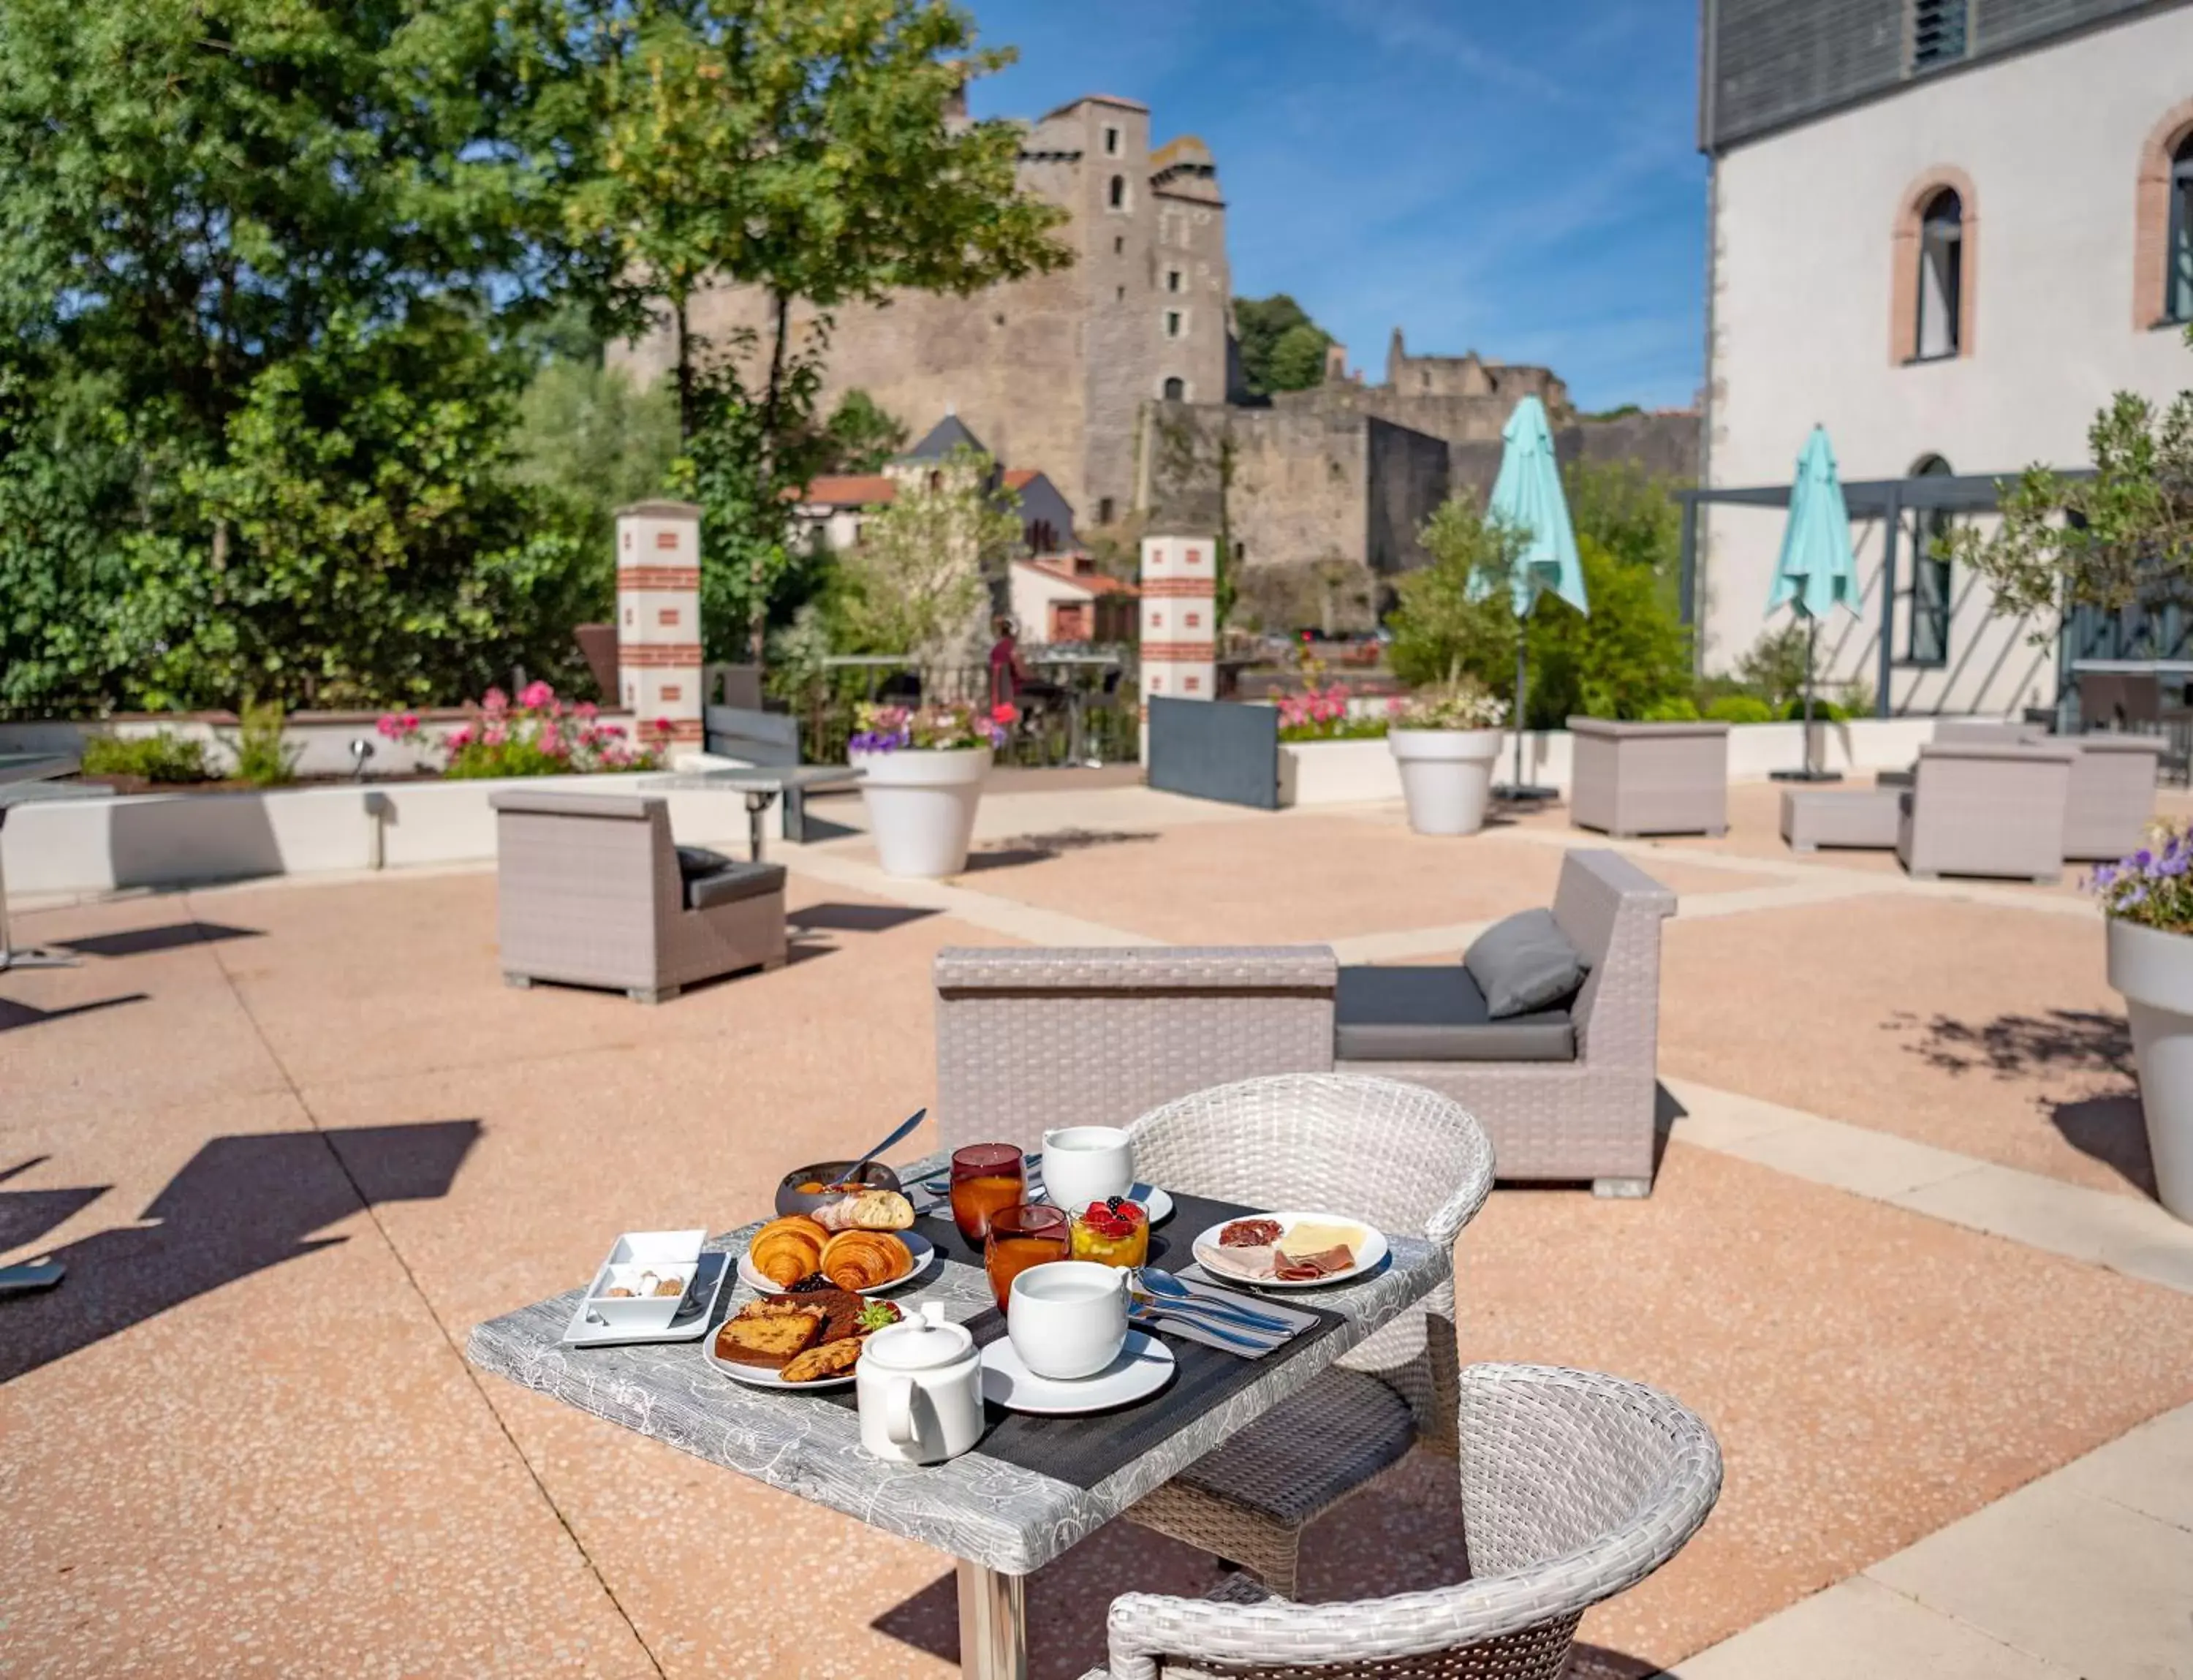 Buffet breakfast in Best Western Plus Villa Saint Antoine Hotel & Spa